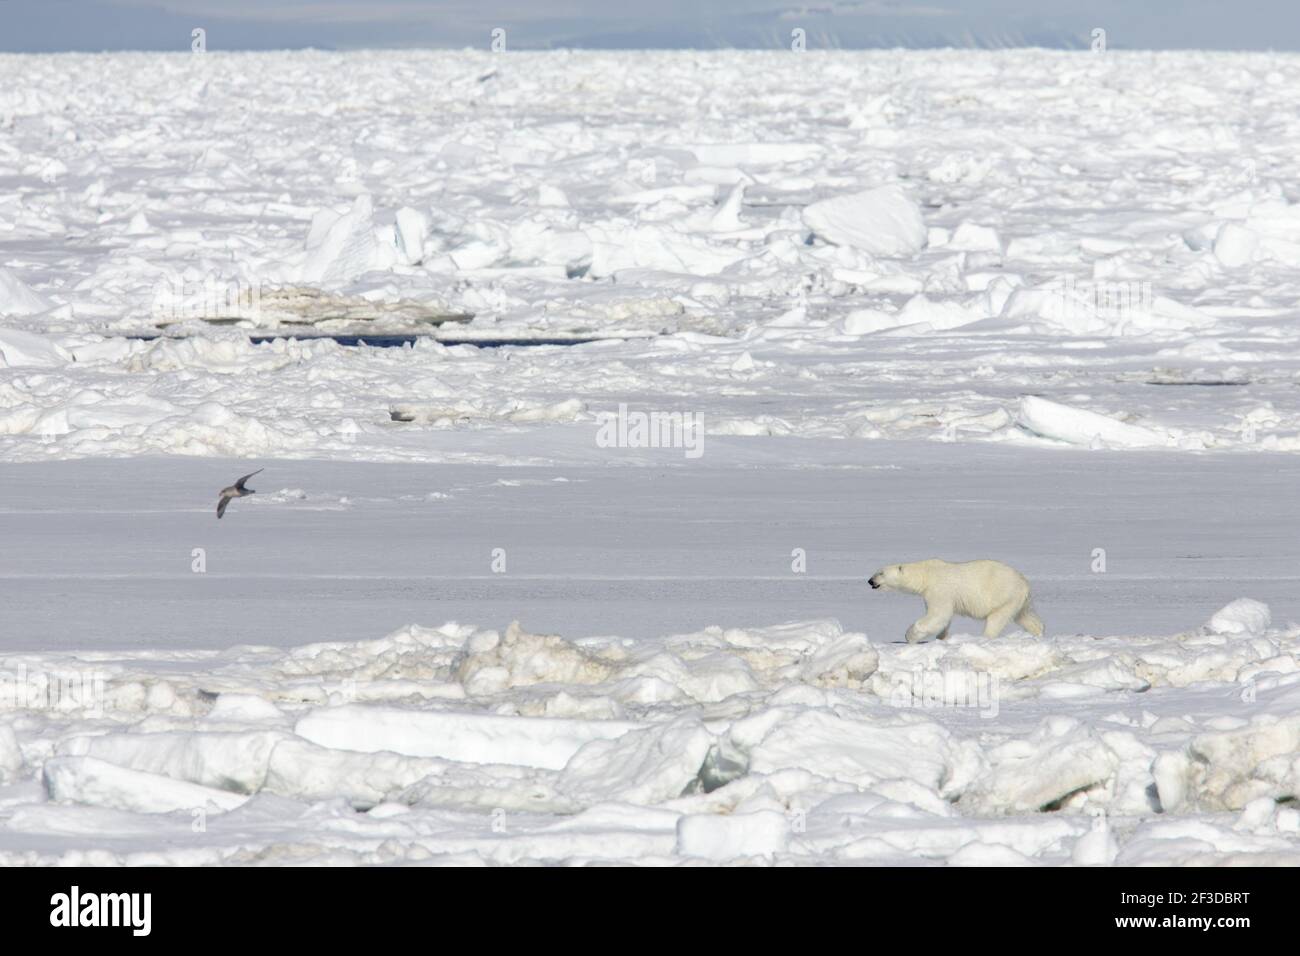 Ours polaire - sur la mer IceUrsus maritimus Svalbard (Spitsbergen) Norvège MA001830 Banque D'Images